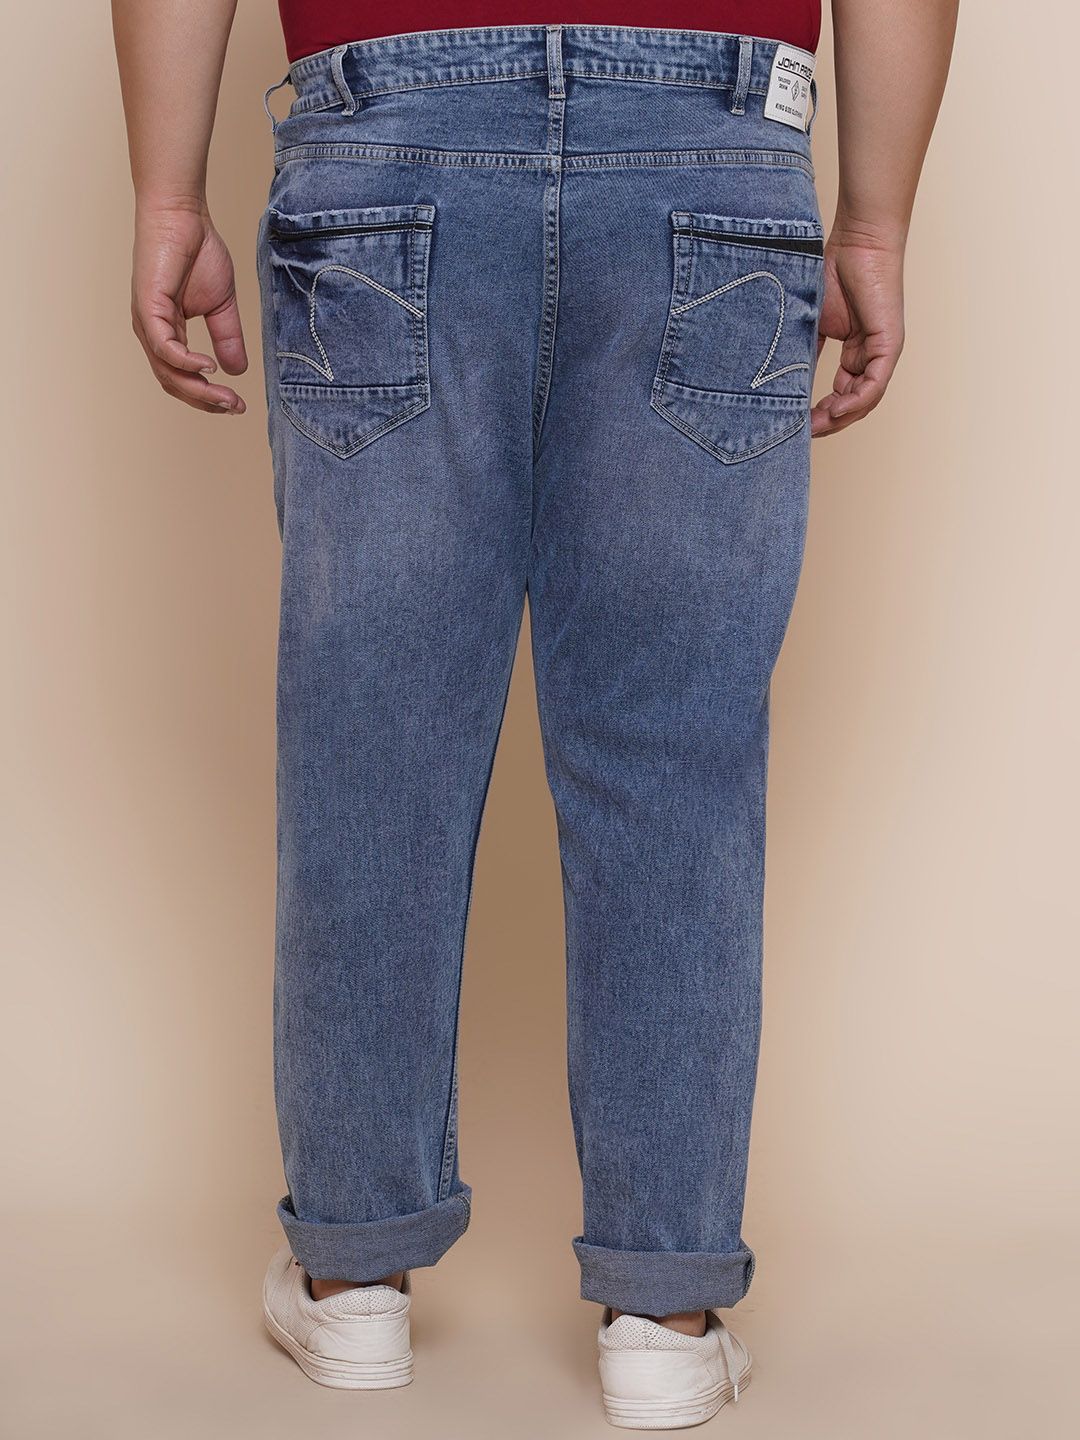 bottomwear/jeans/EJPJ25085/ejpj25085-5.jpg